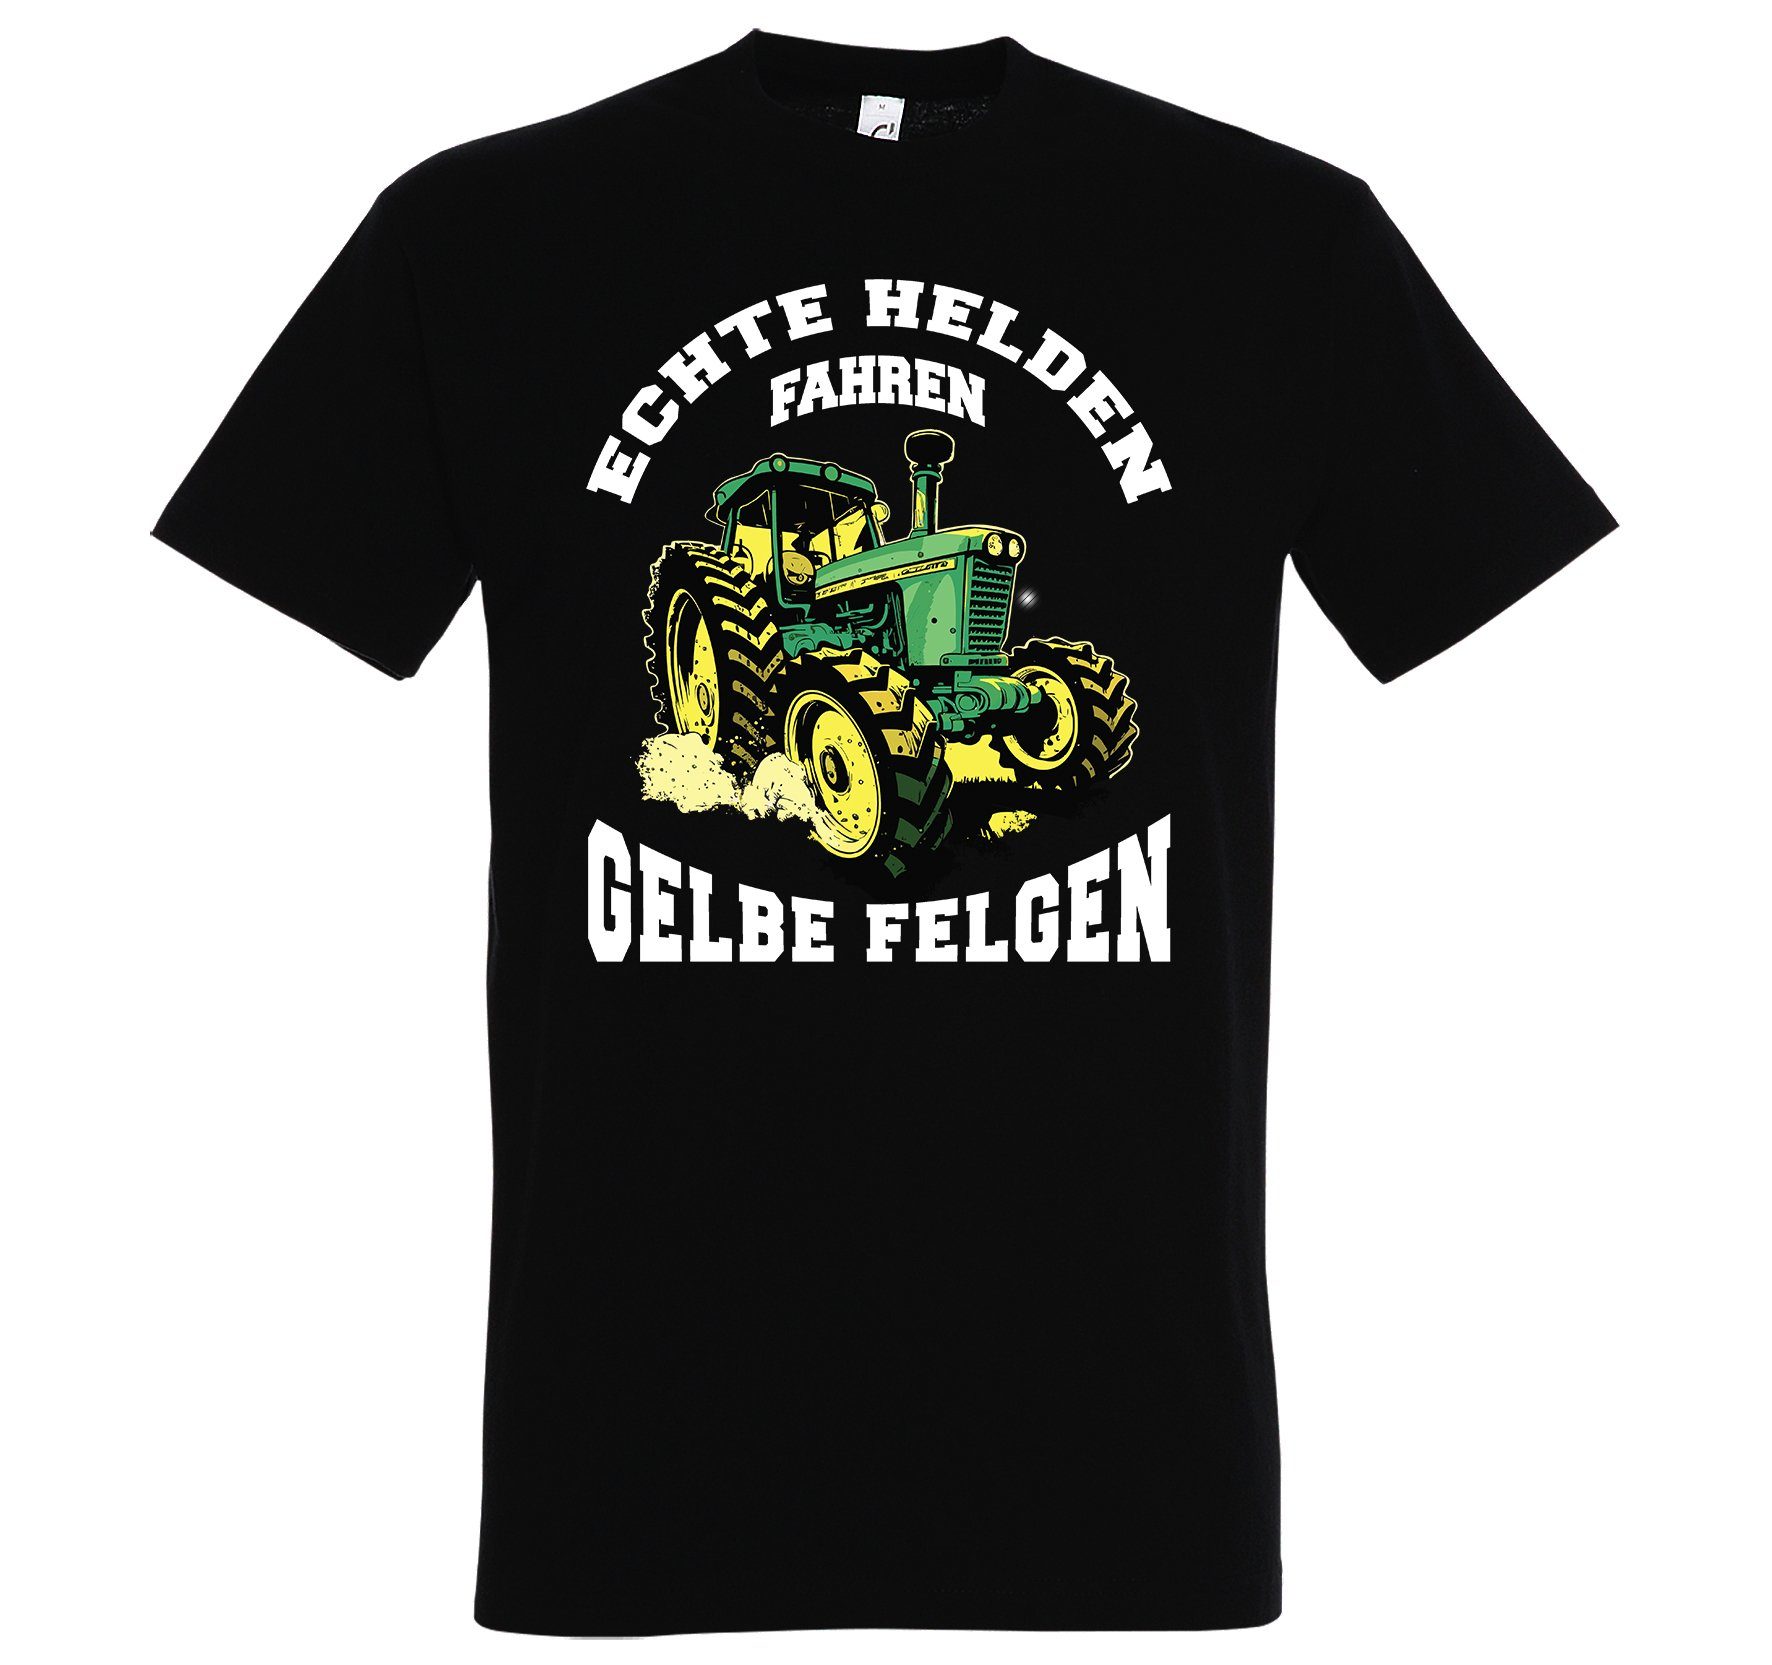 Spruch Felgen" Print-Shirt lustigem Youth fahren Herren Helden "Echte Schwarz mit gelbe Designz T-Shirt